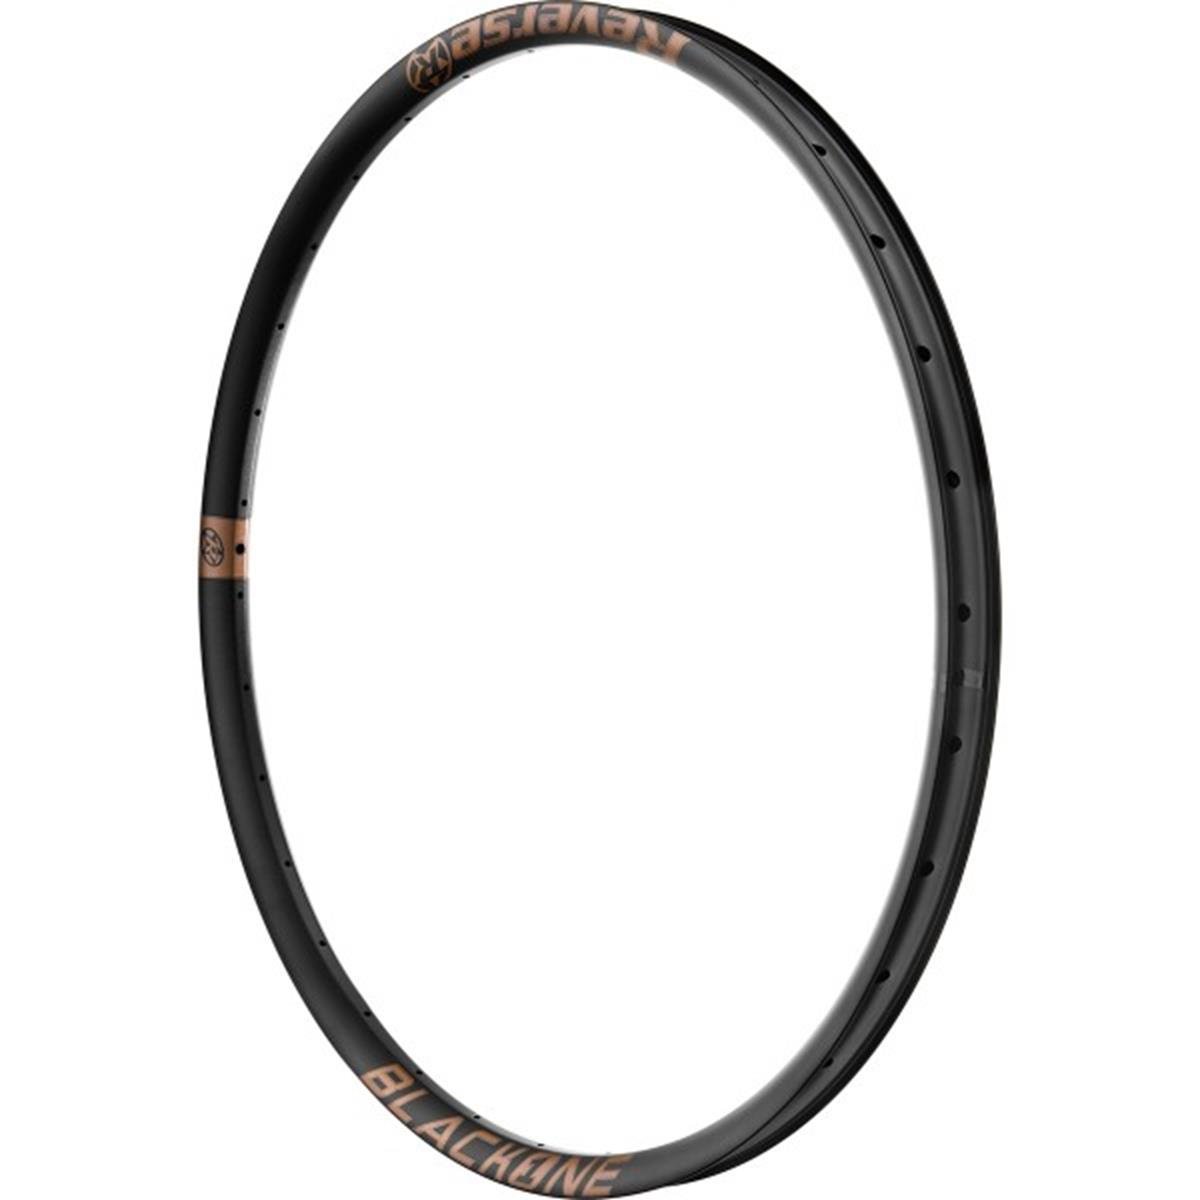 Reverse Components Cerchio MTB Black One Nero/Rame, 29 Pollici x 30 mm, Alluminio